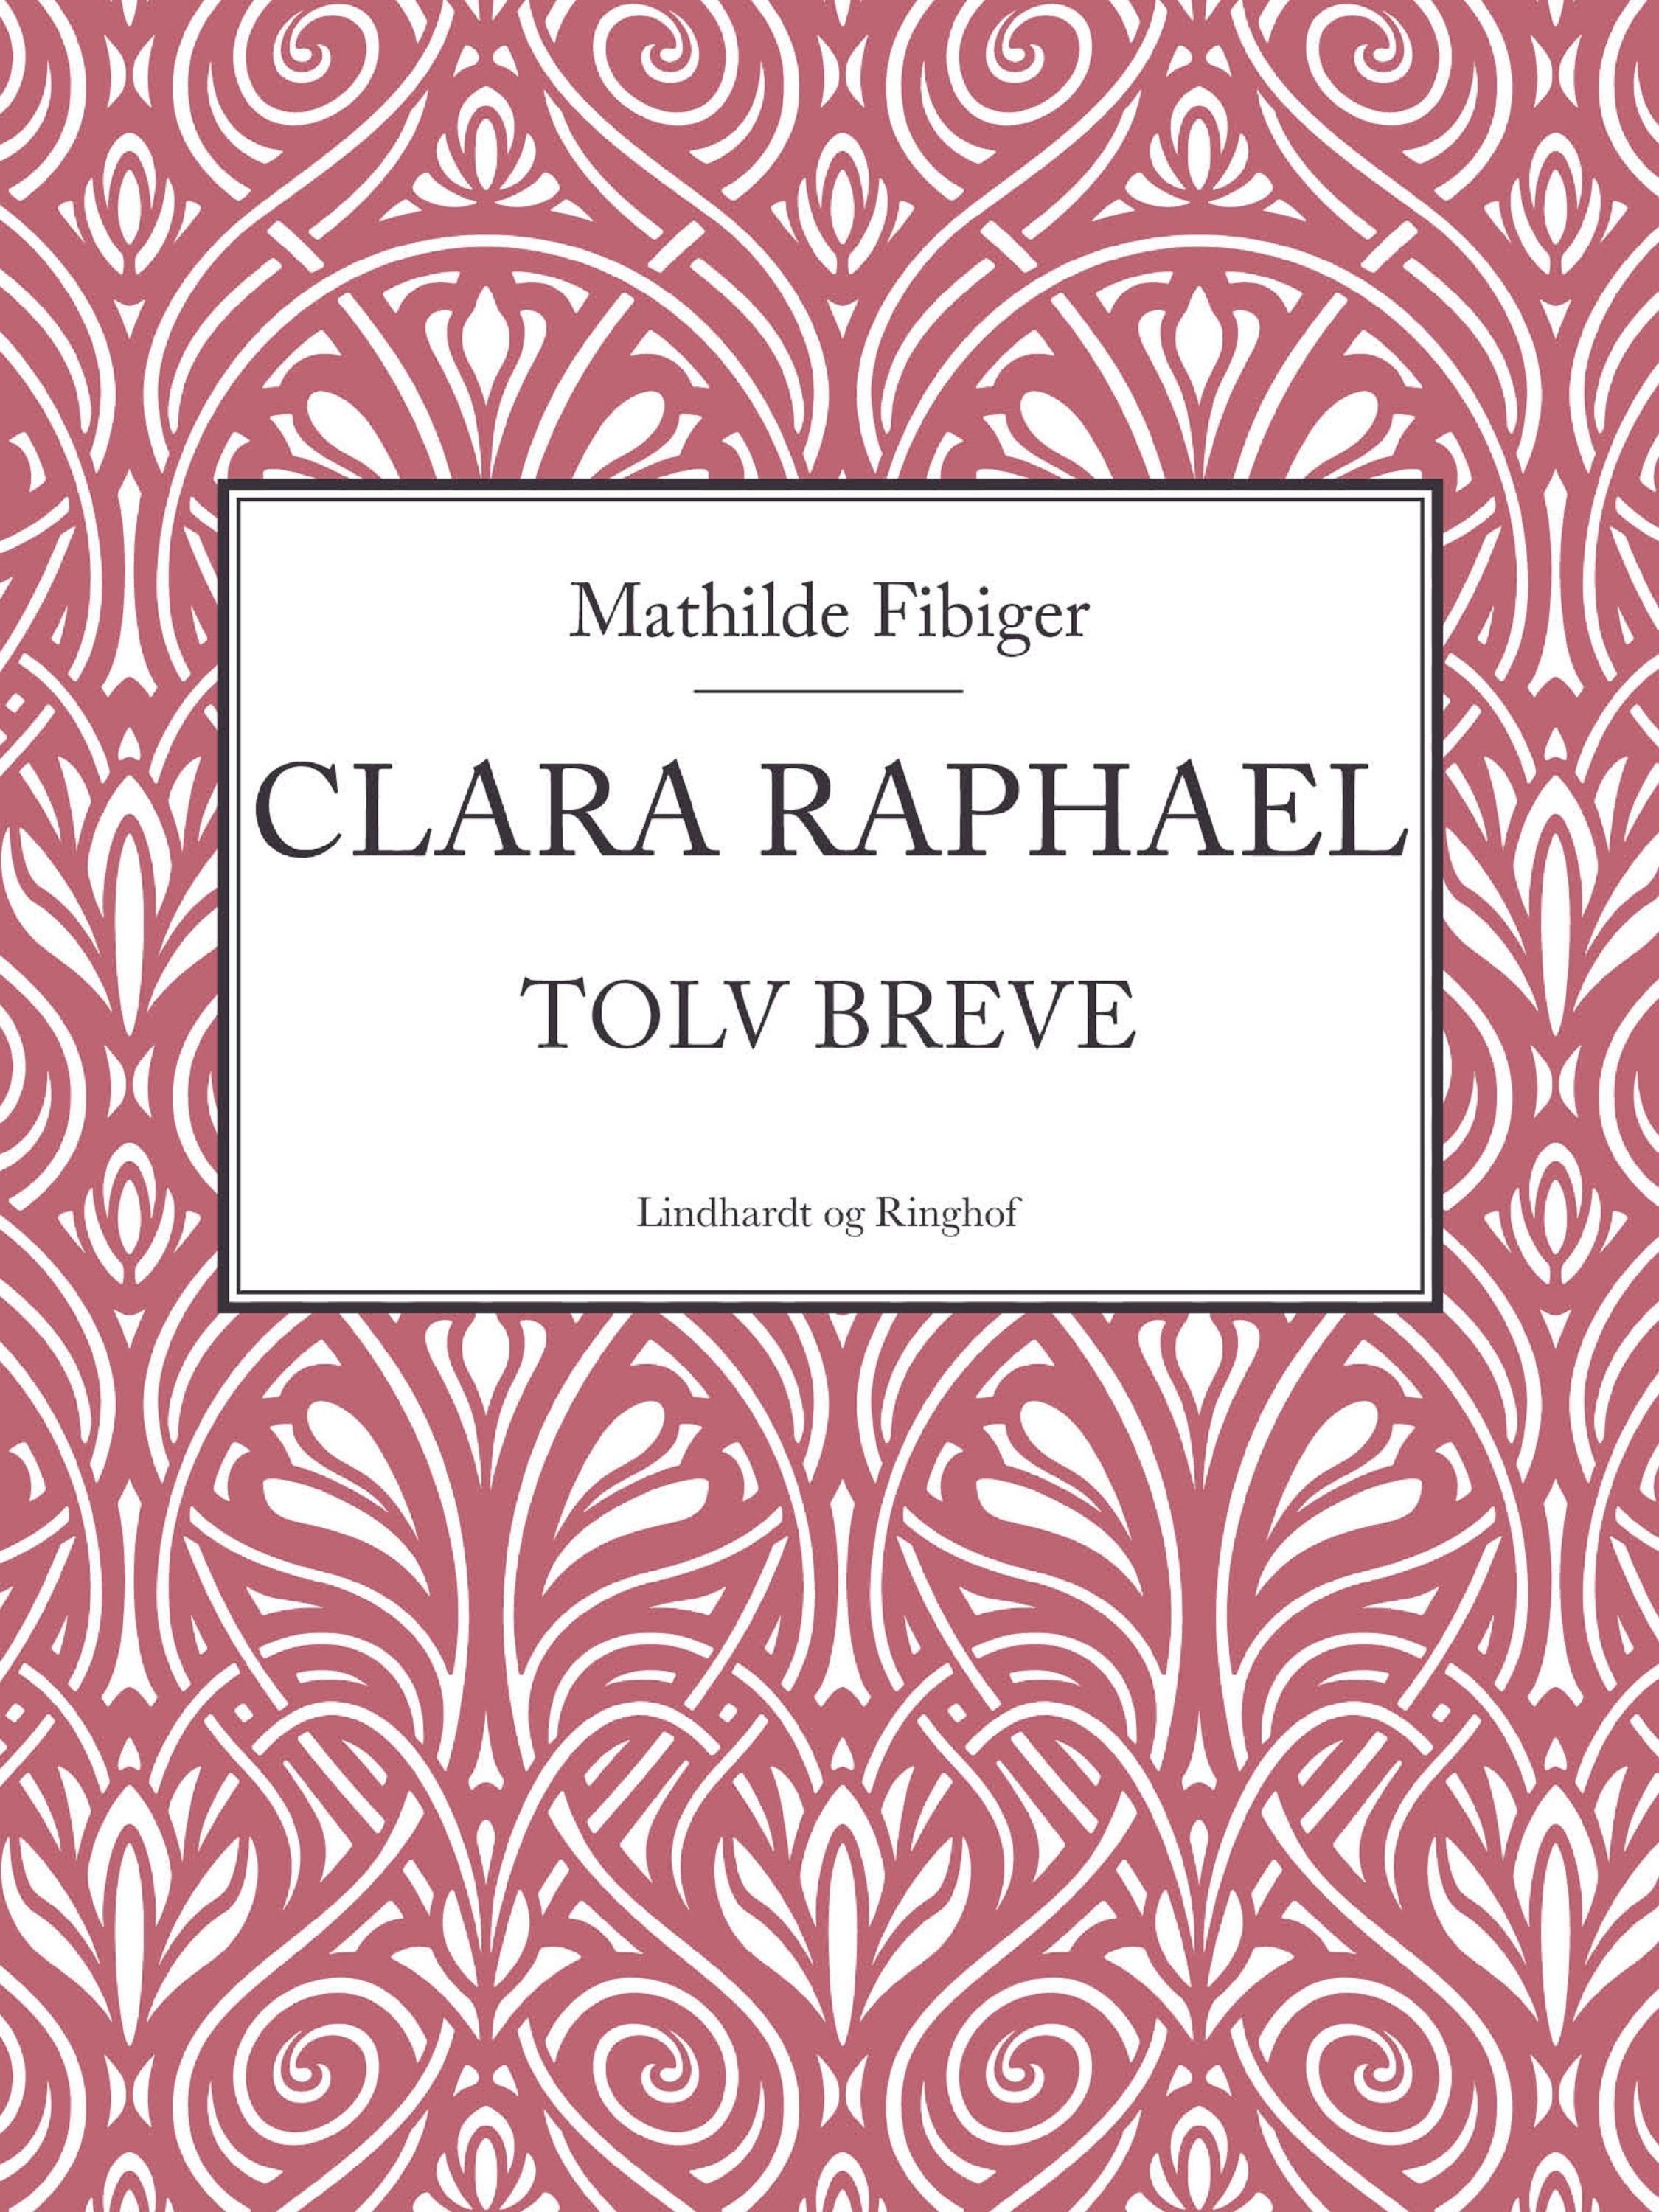 Clara Raphael, lydbog af Mathilde Fibiger